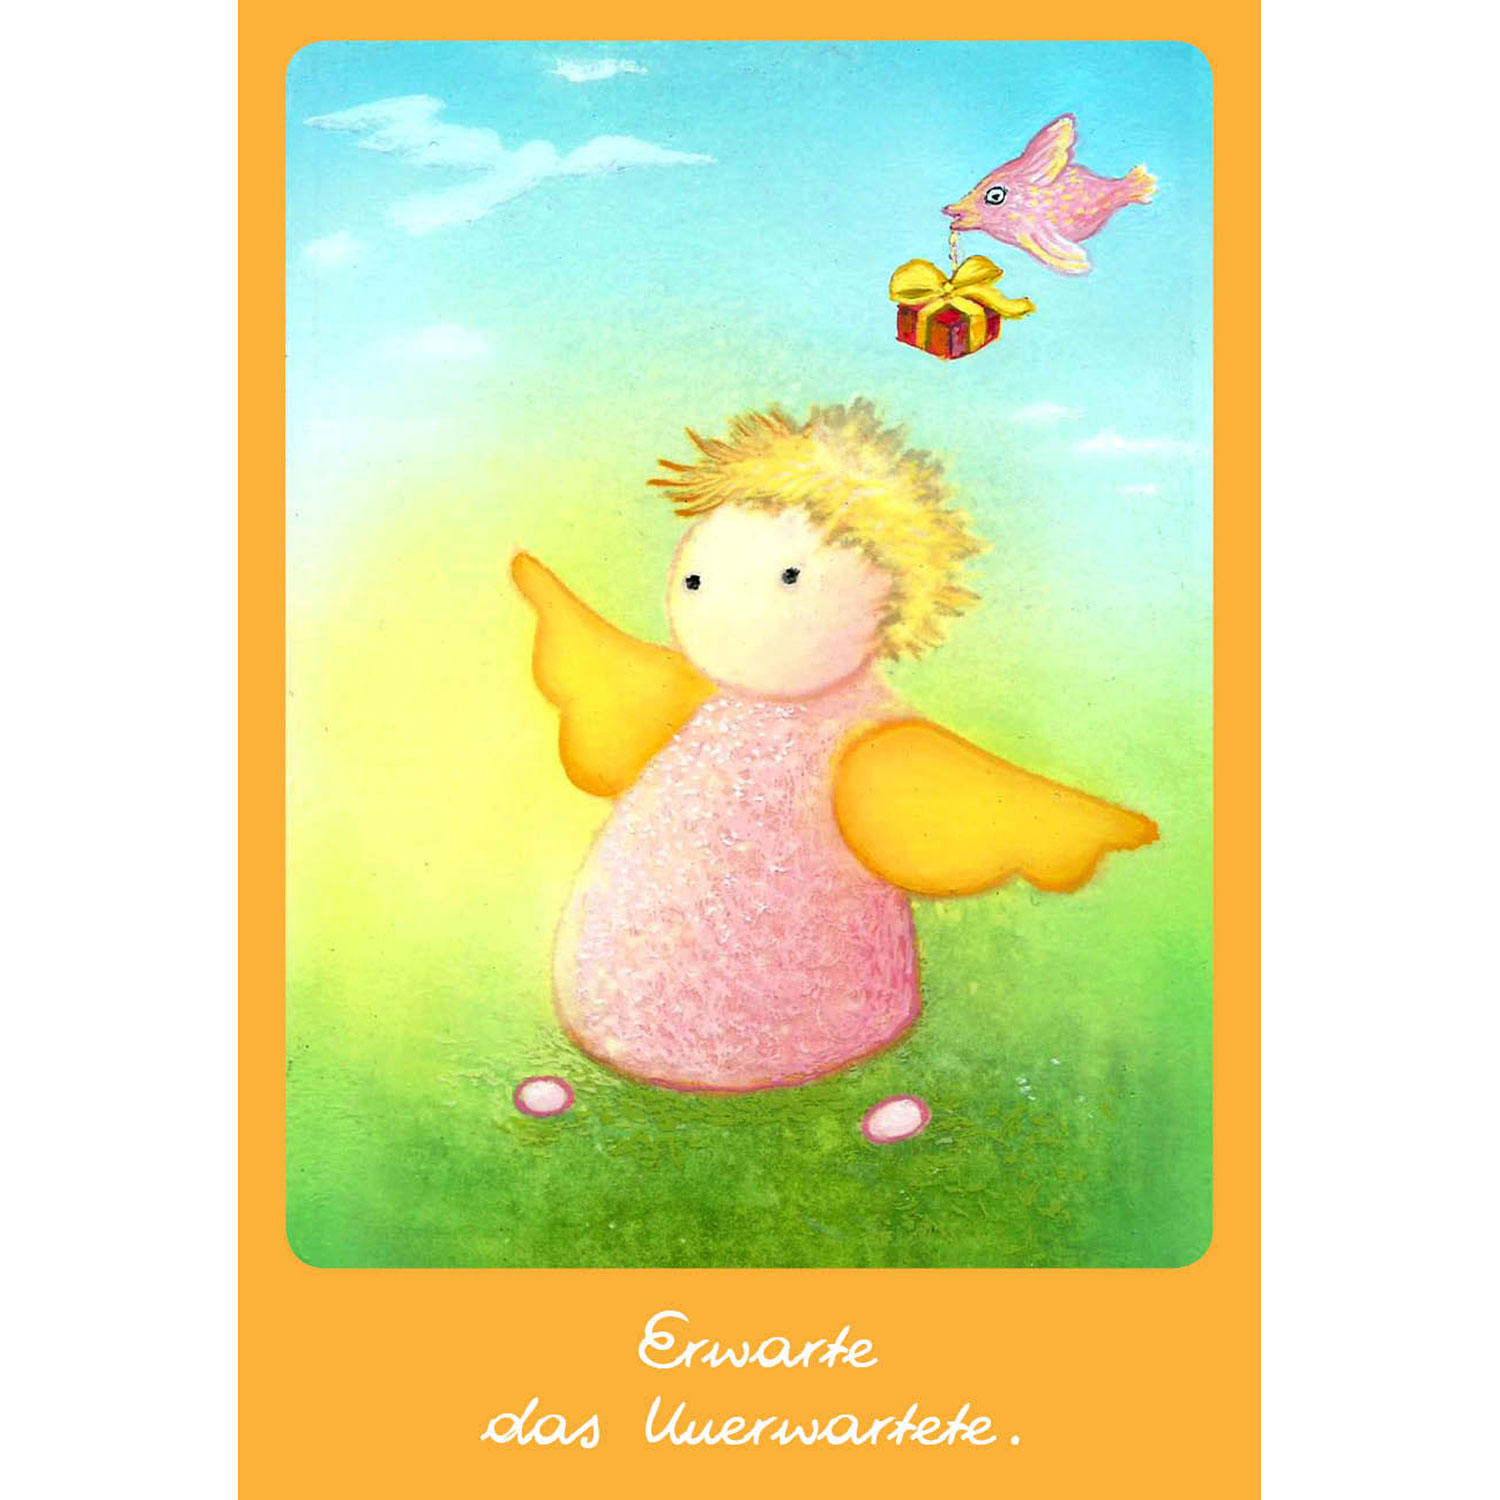 Der kleine Engel – Botschaften für die Seele (Kartenset), Produktbild 3